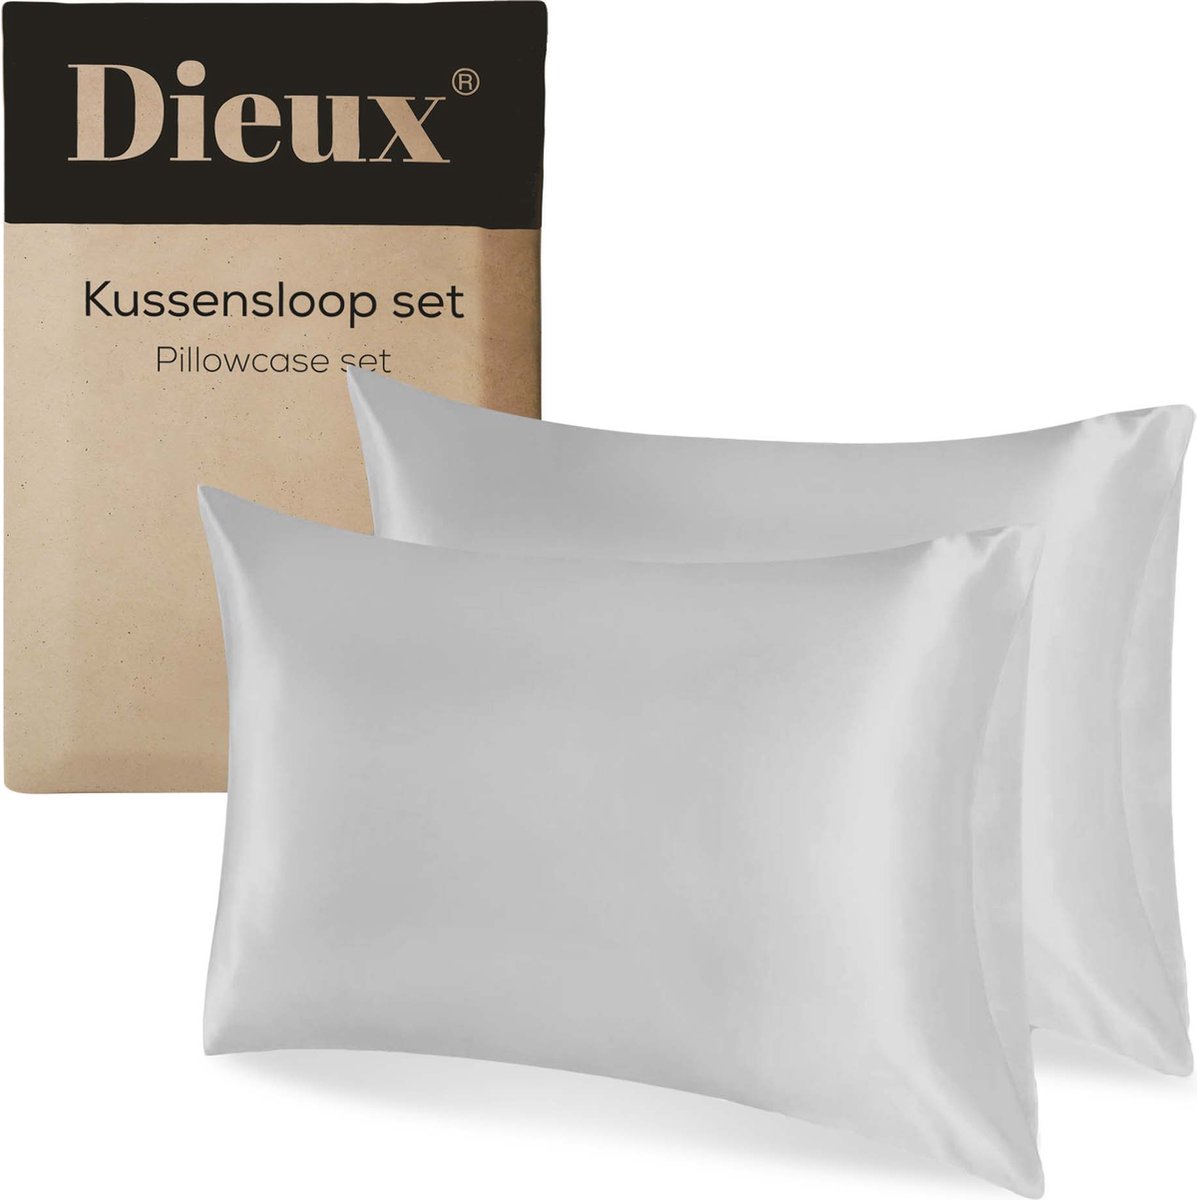 Dieux® - Luxe Satijnen Kussensloop - Grijs - Kussenslopen 60 x 70 cm - set van 2 - Kussensloop Satijn - Anti allergeen - Huidverzorging - Haarverzorging - Dieux®